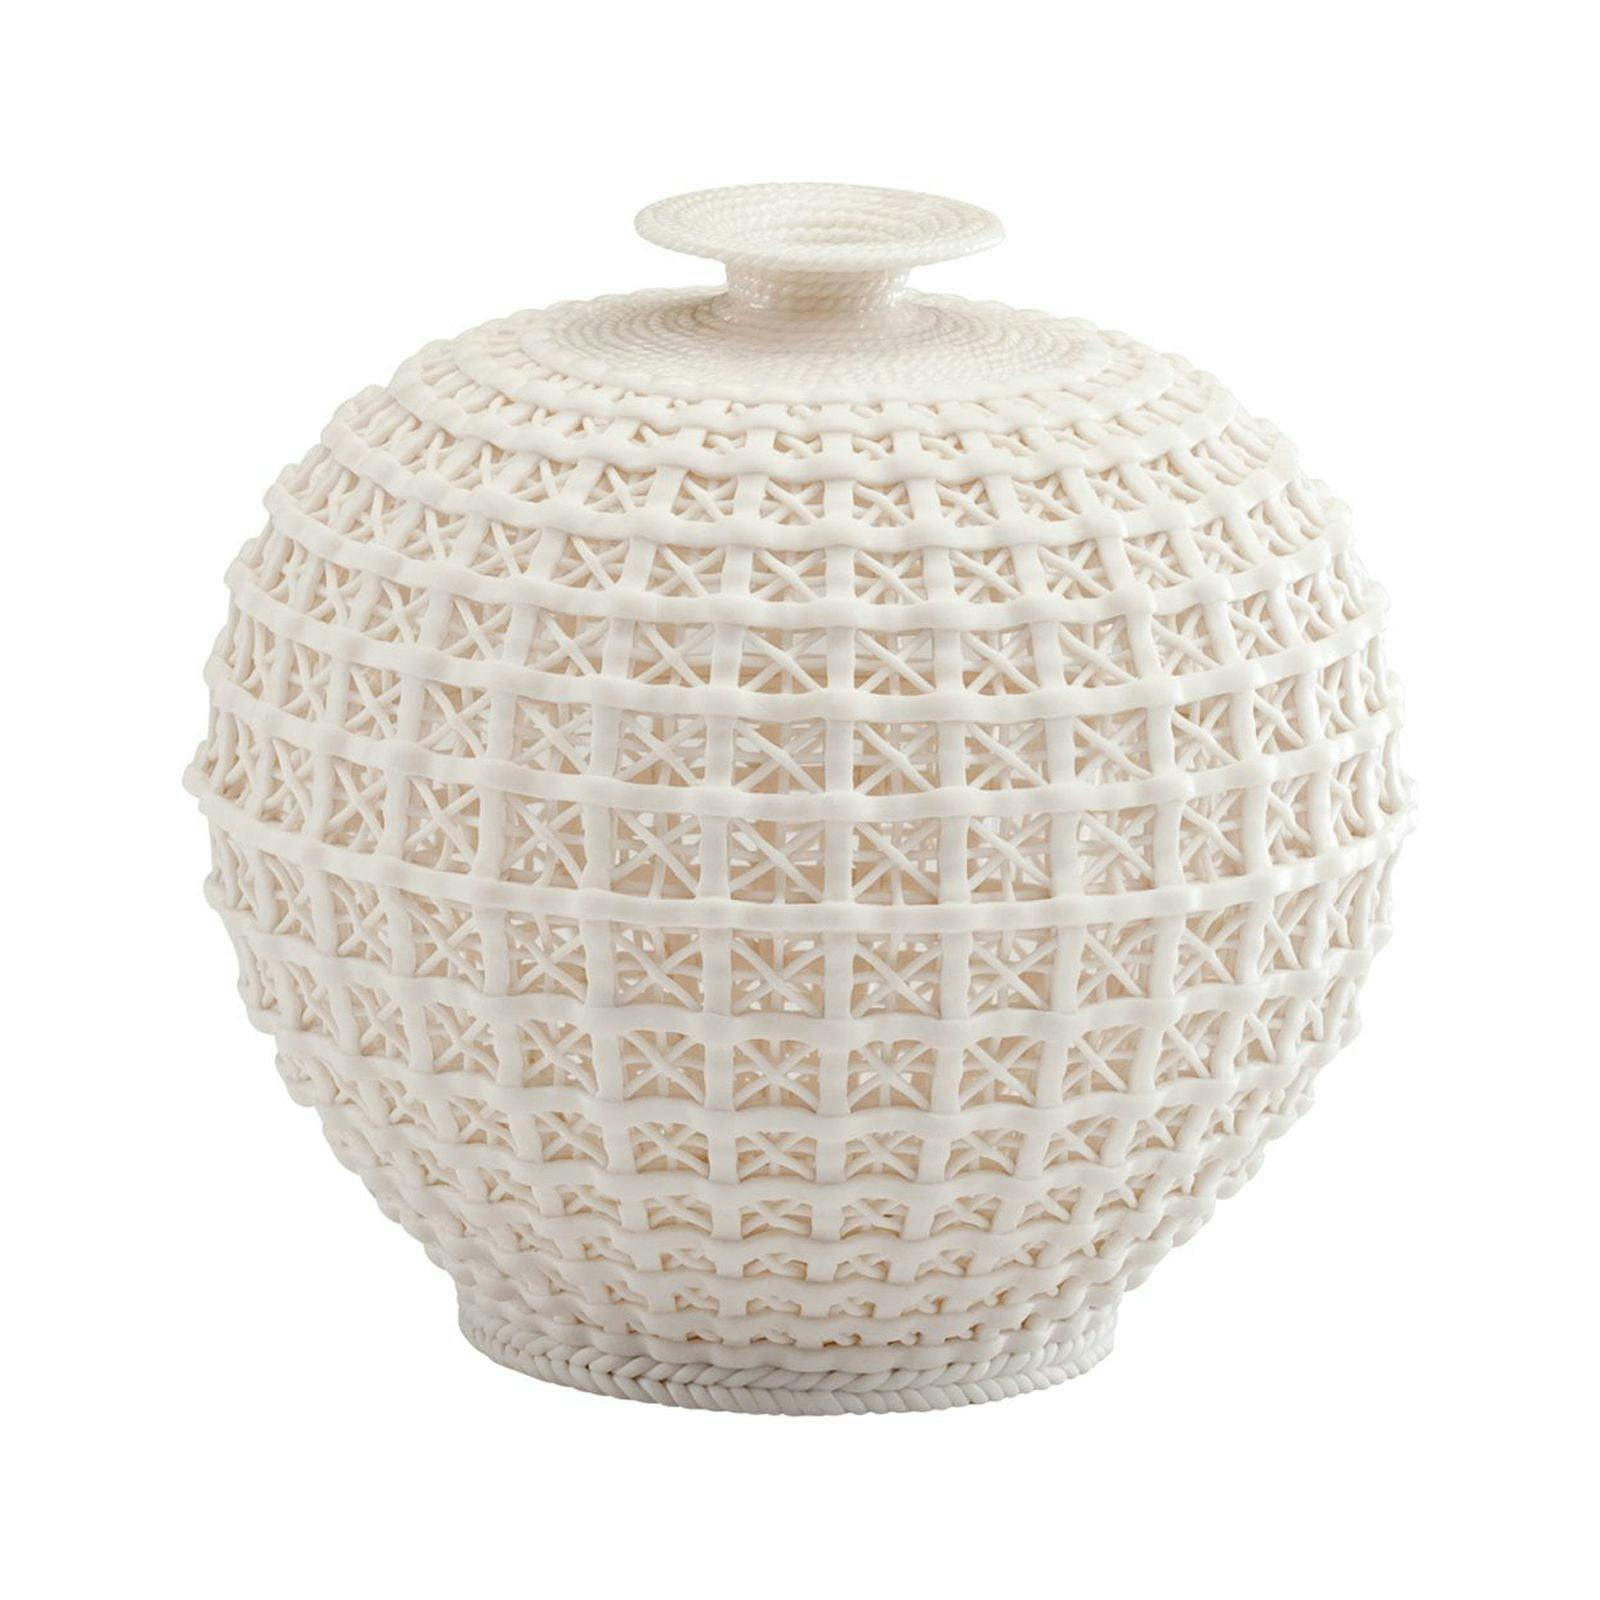 Contemporary Ceramic Bouquet Floor Vase 8.25" White